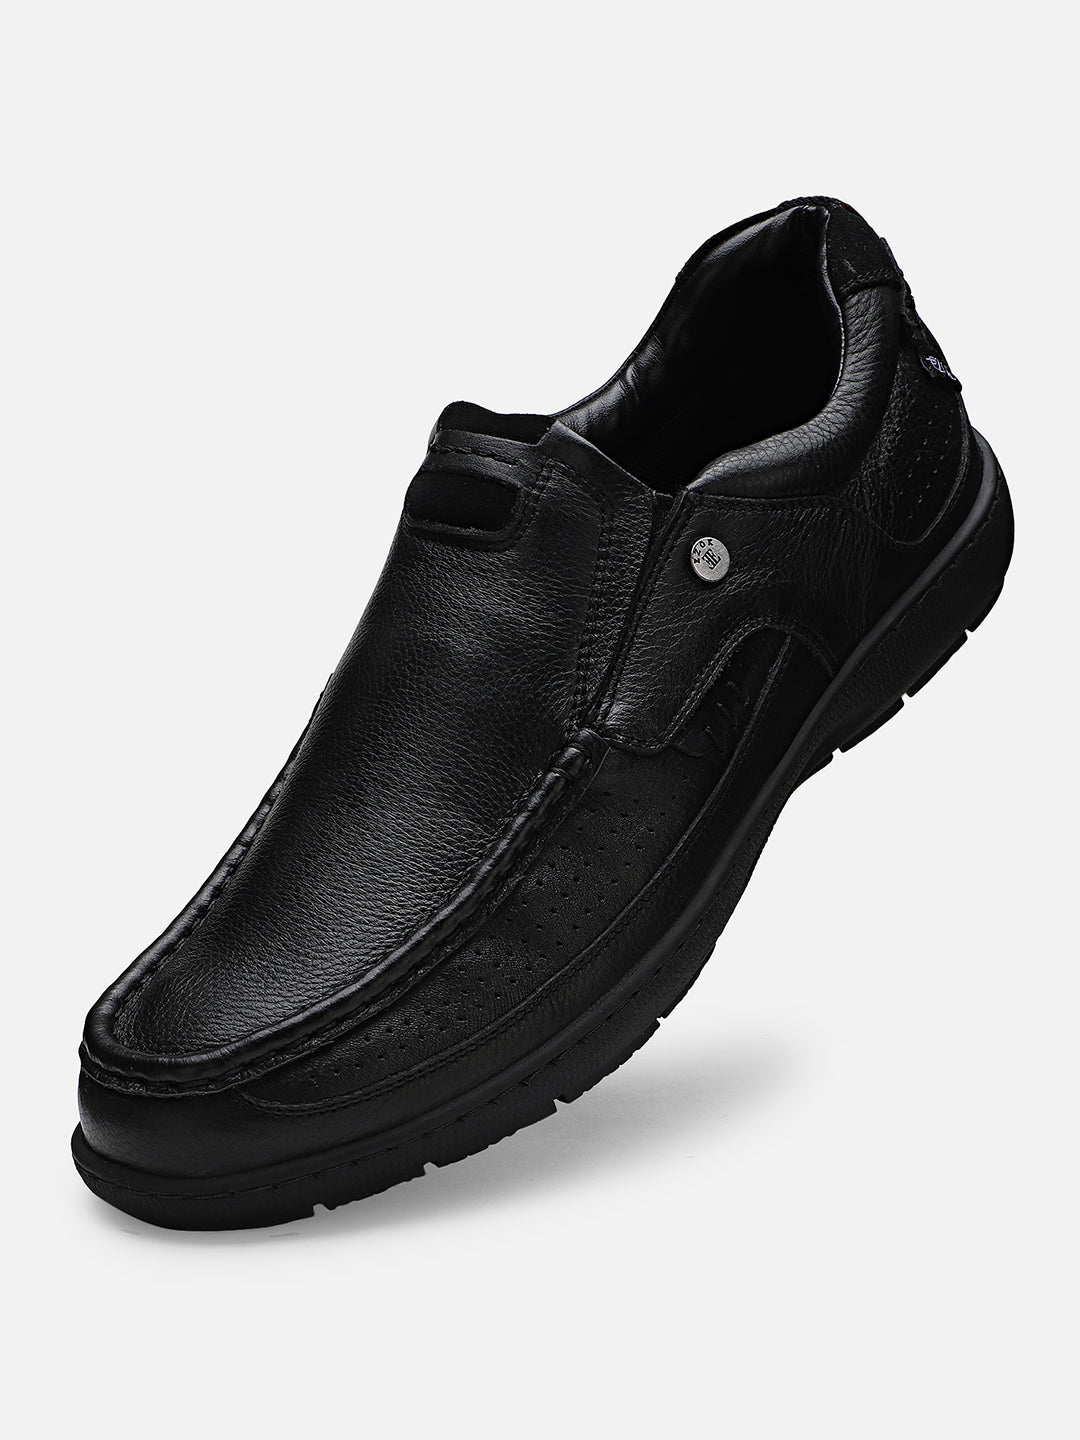 Ezok Men Haig 2184 Black Leather Casual Shoes